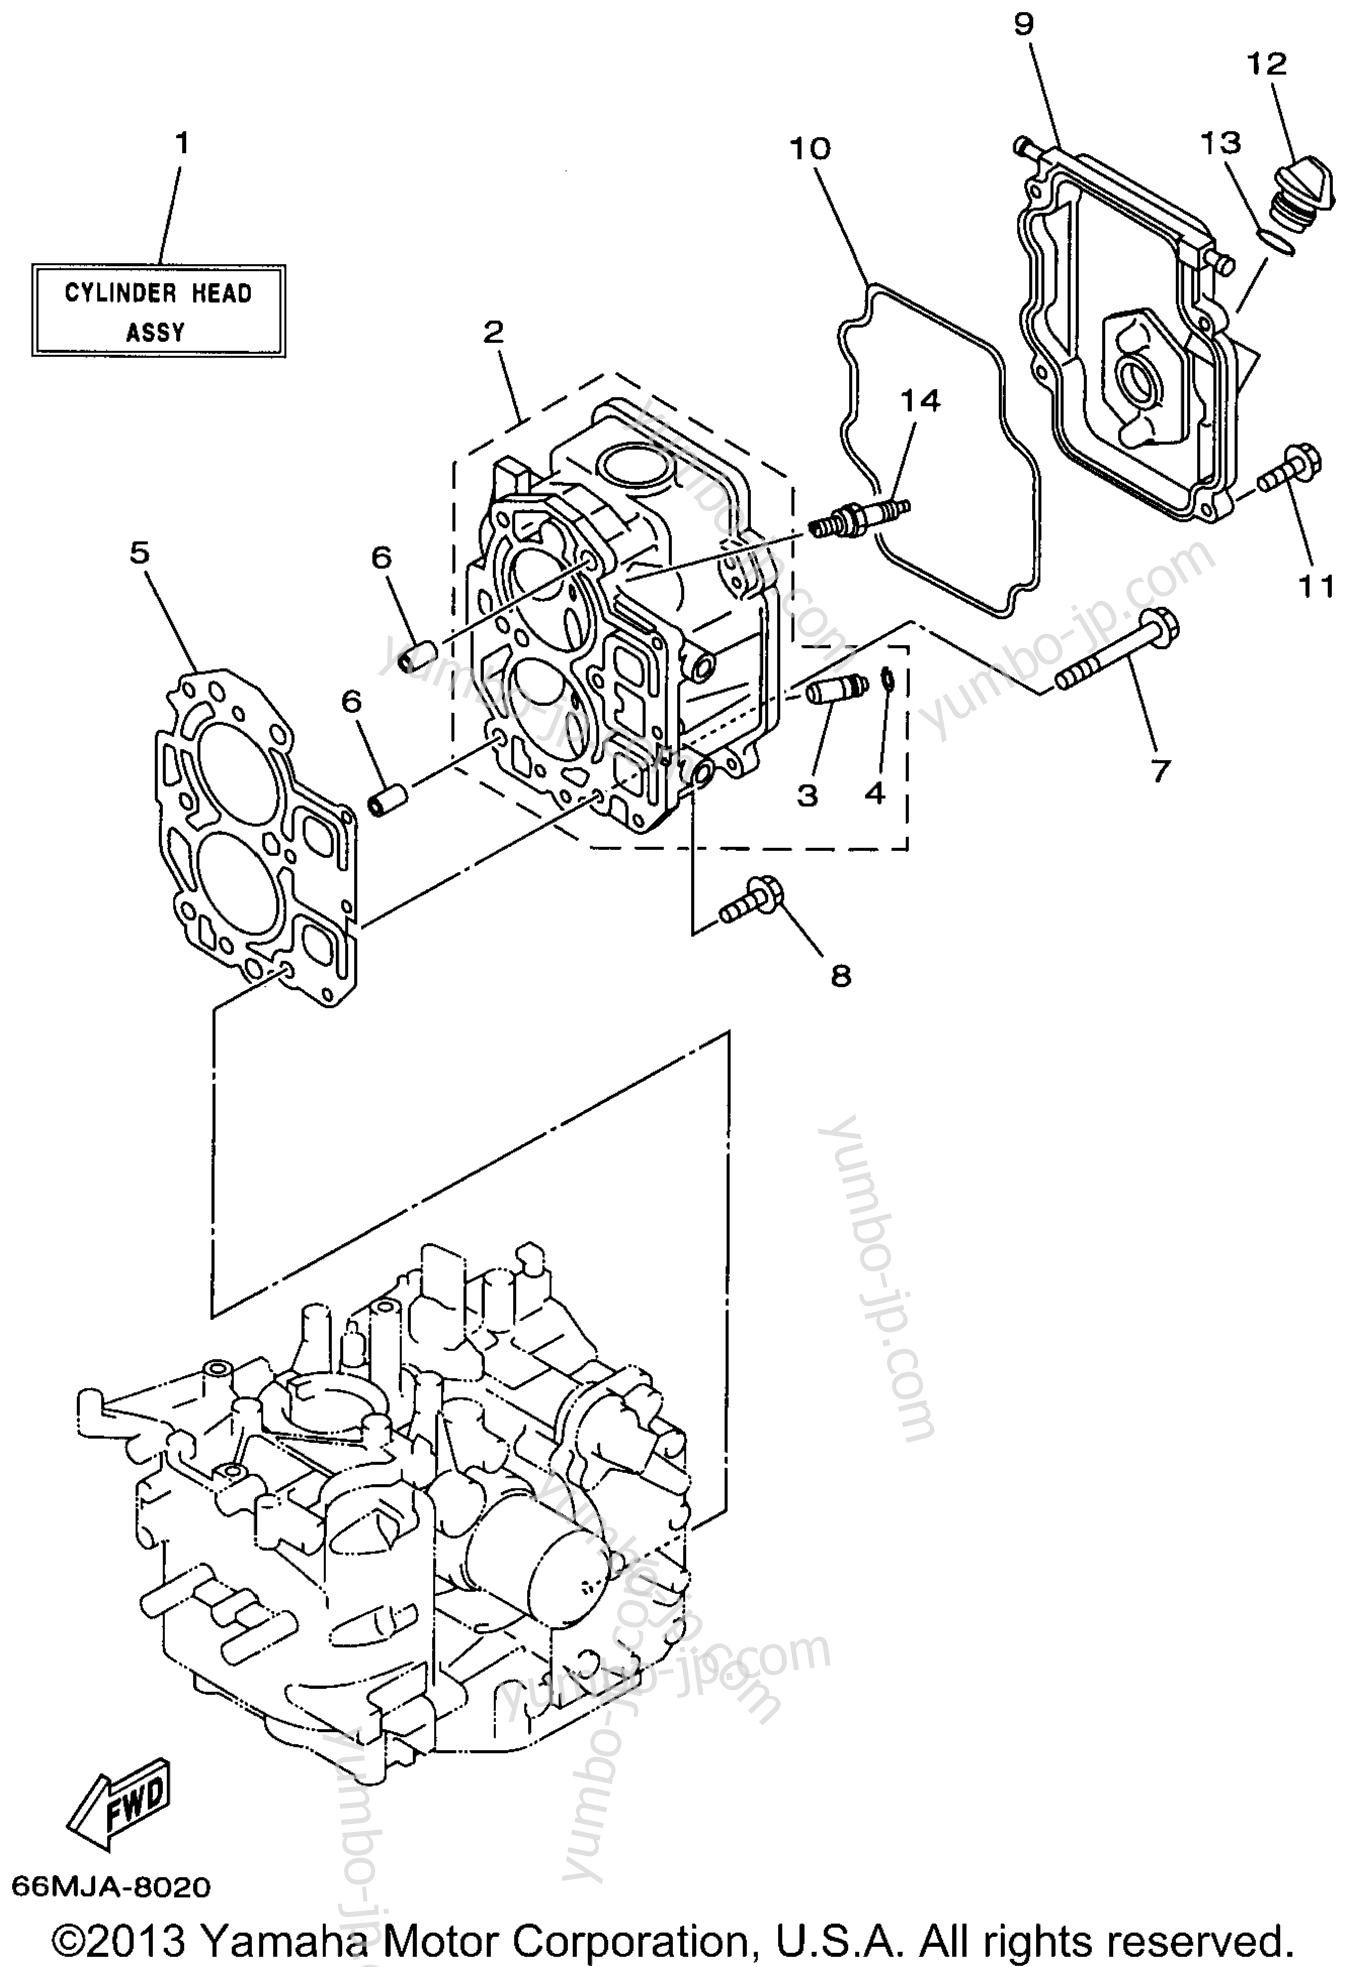 Cylinder Crankcase 2 для лодочных моторов YAMAHA F15MSHW 1998 г.